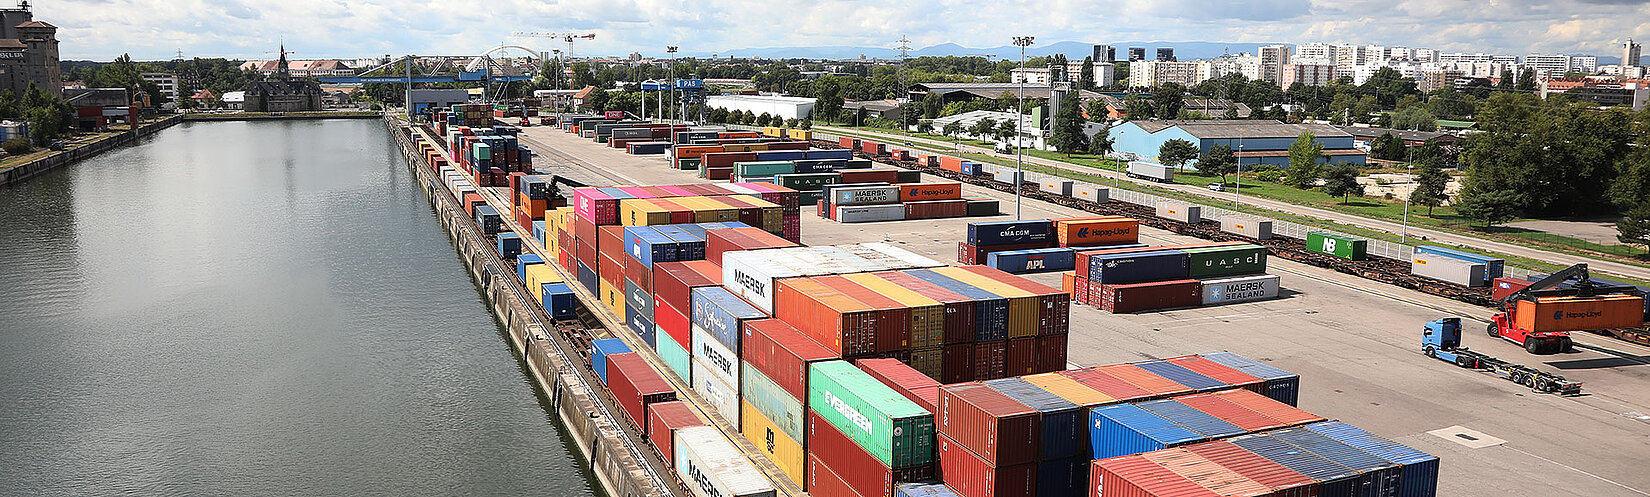 Container-Terminal am Hafenbecken mit der Stadt Strasbourg im Hintergrund